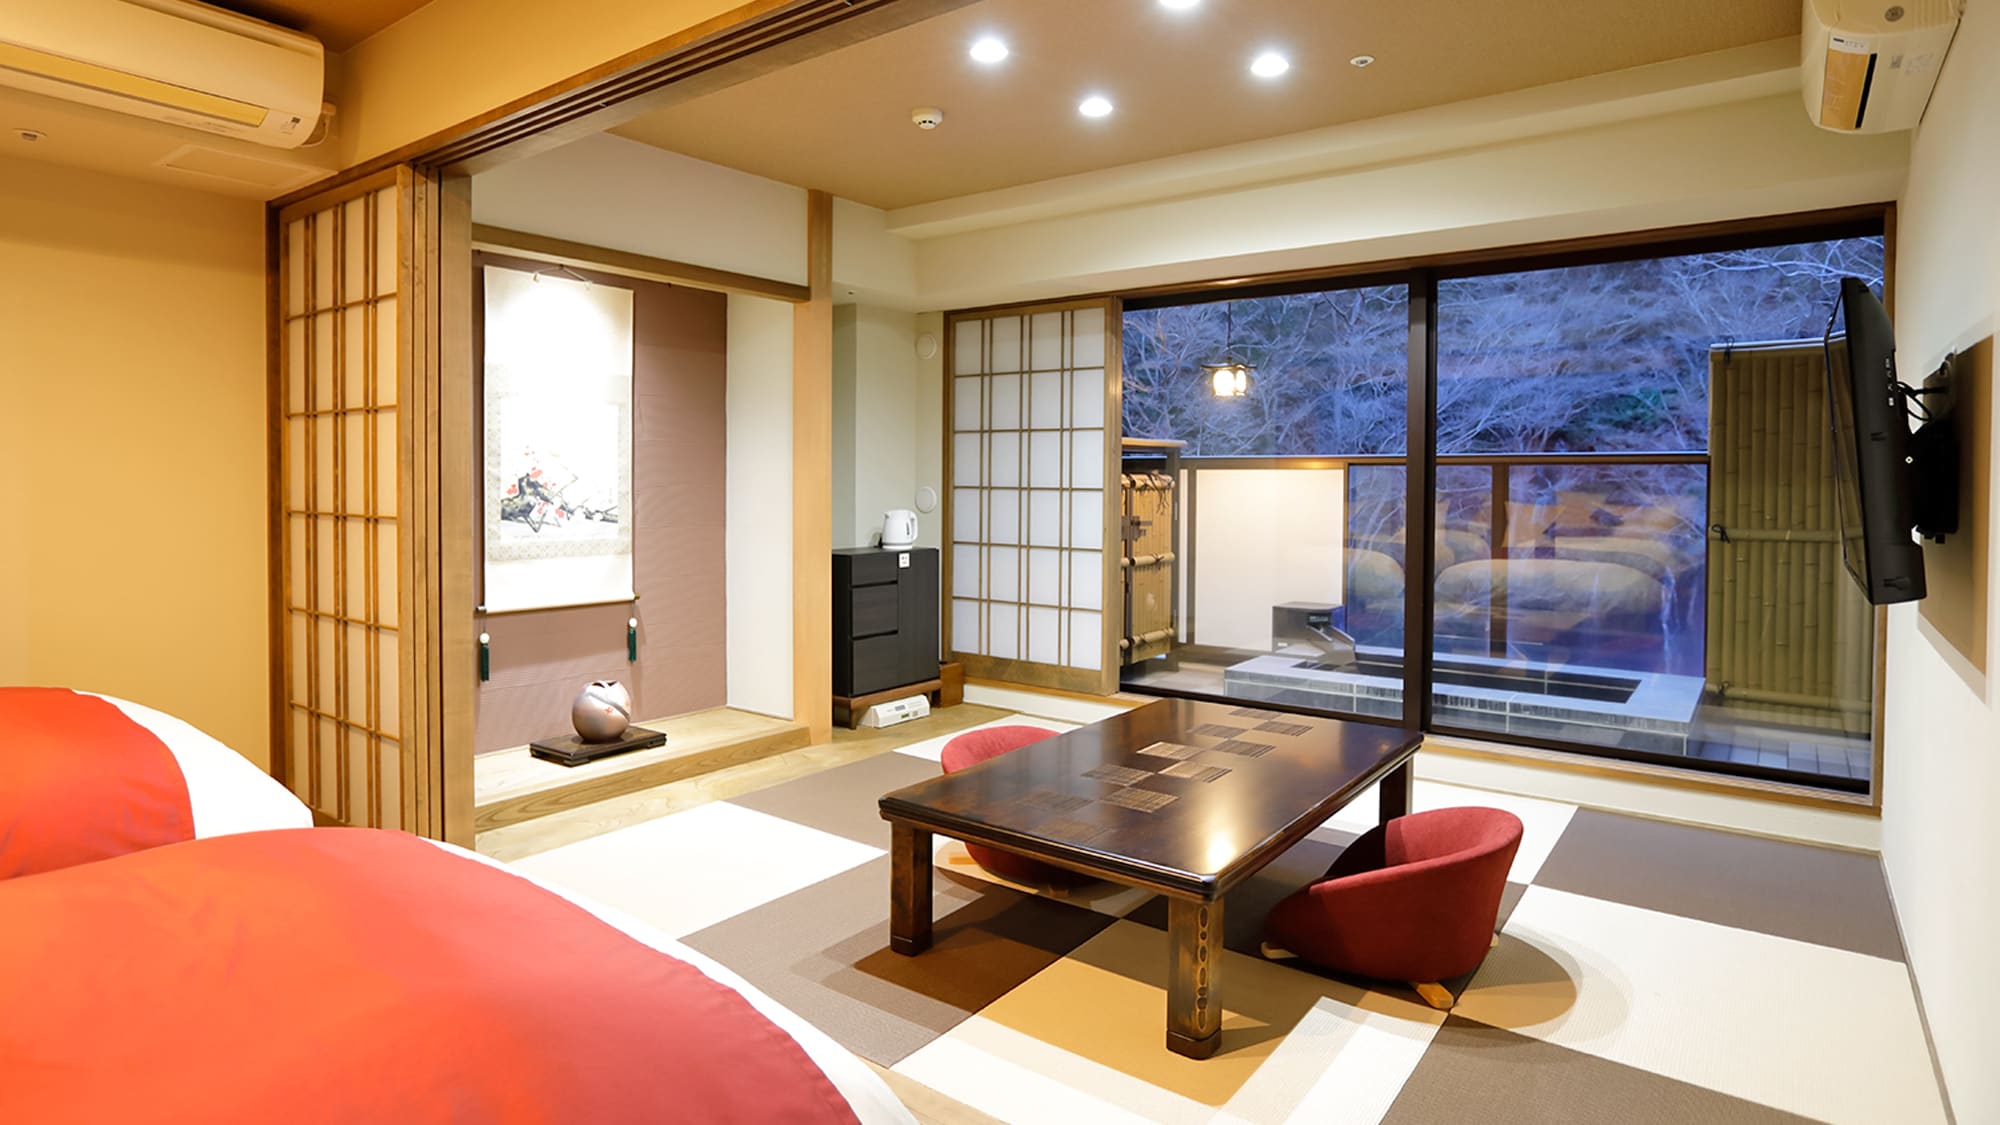 日式房间和可放松身心的卧室结合了现代日式露天浴池的日西式房间。